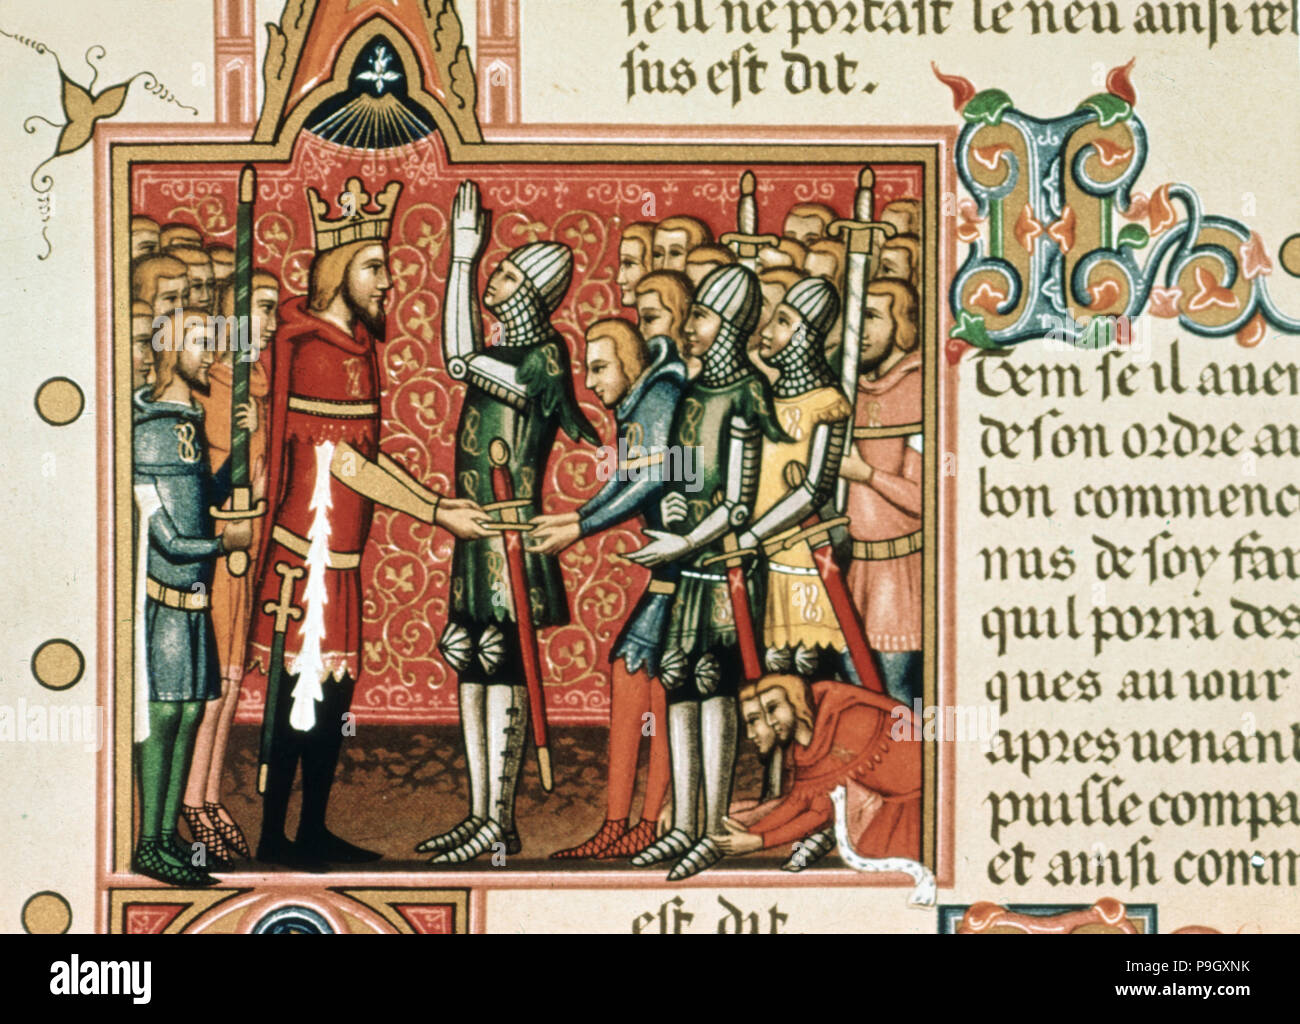 Roldan vielversprechende Loyalität zu Karl dem Großen, auf einer Seite der Handschrift des 14. Jahrhunder t… Miniatur Stockfoto